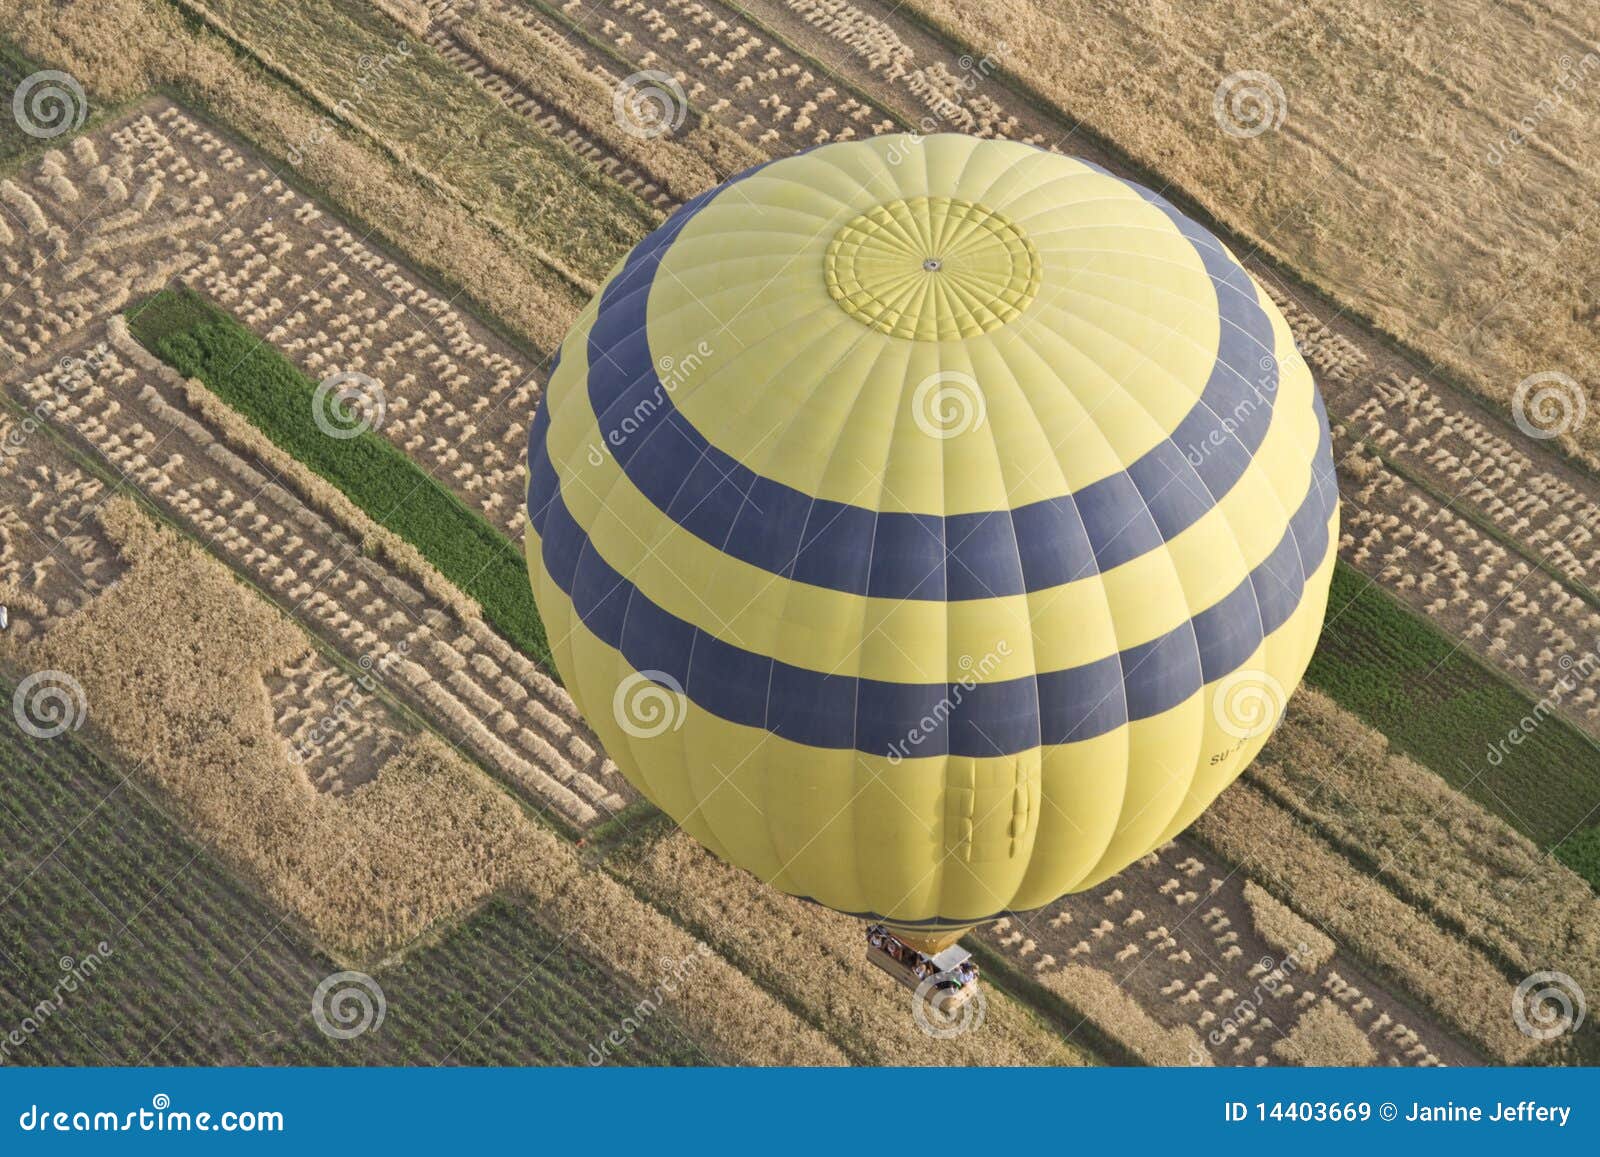 balloons over farmland